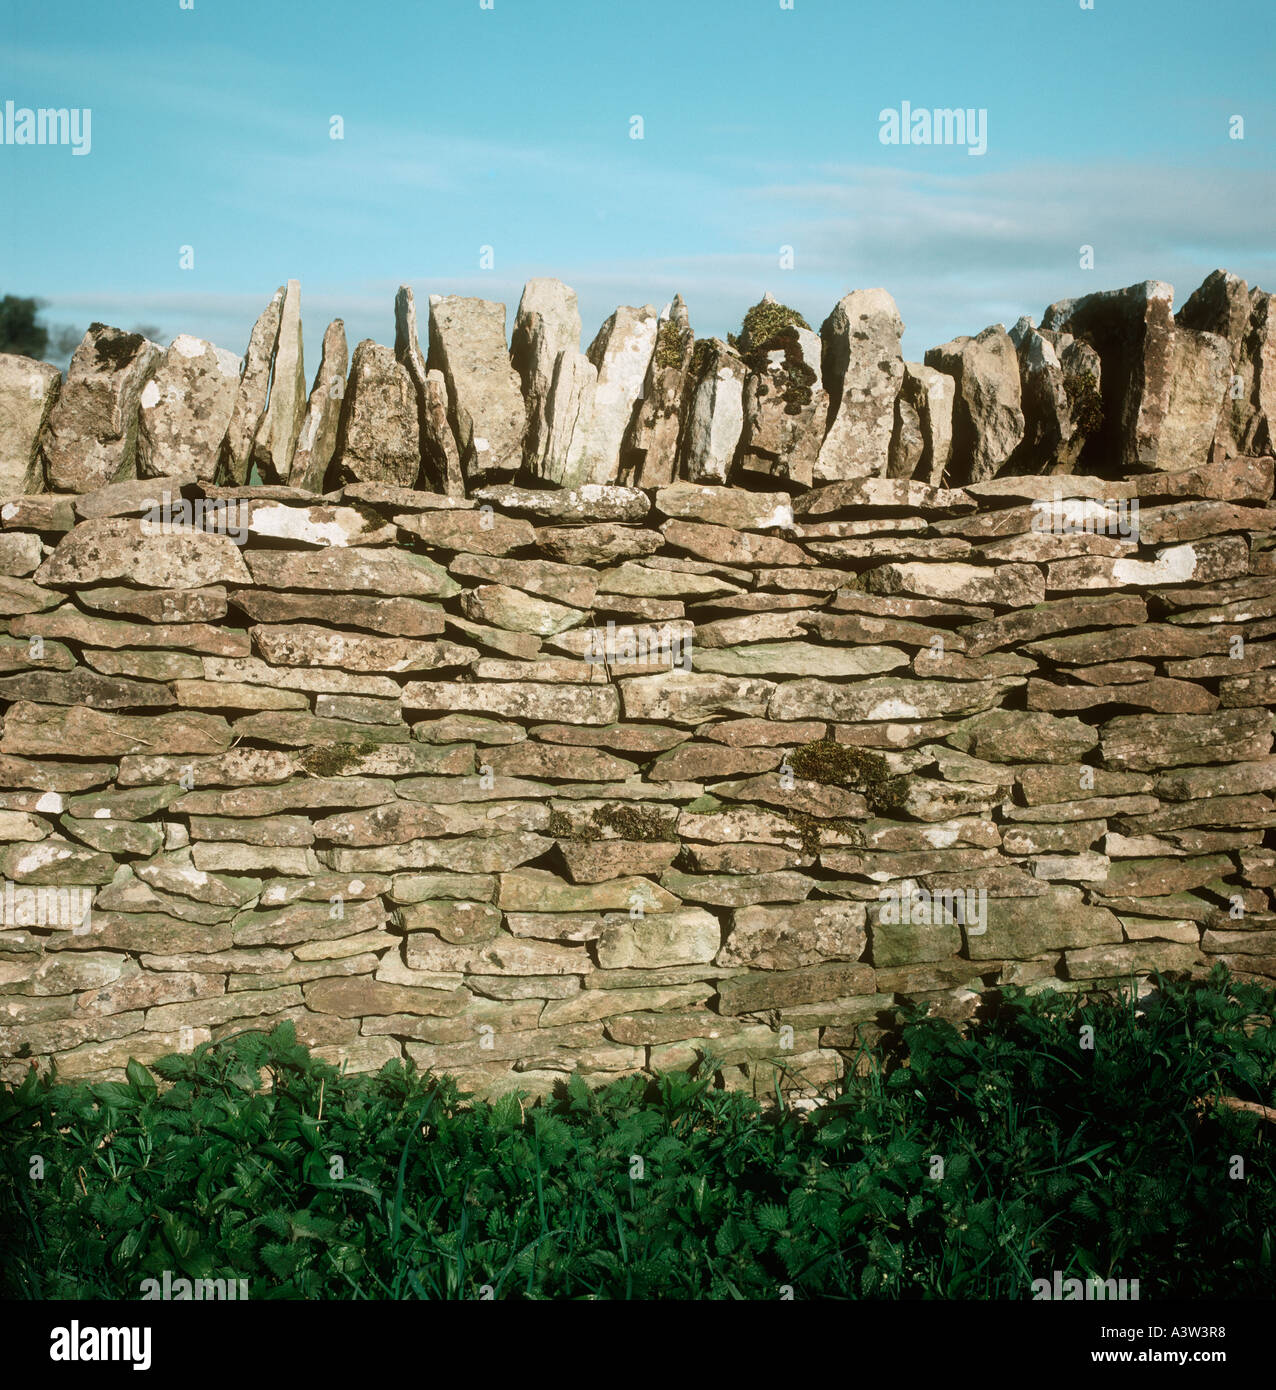 Ordentlich Cotswold Steinmauer mit horizontalen wichtigsten Steinen und vertikale Begrenzung Steinen Stockfoto